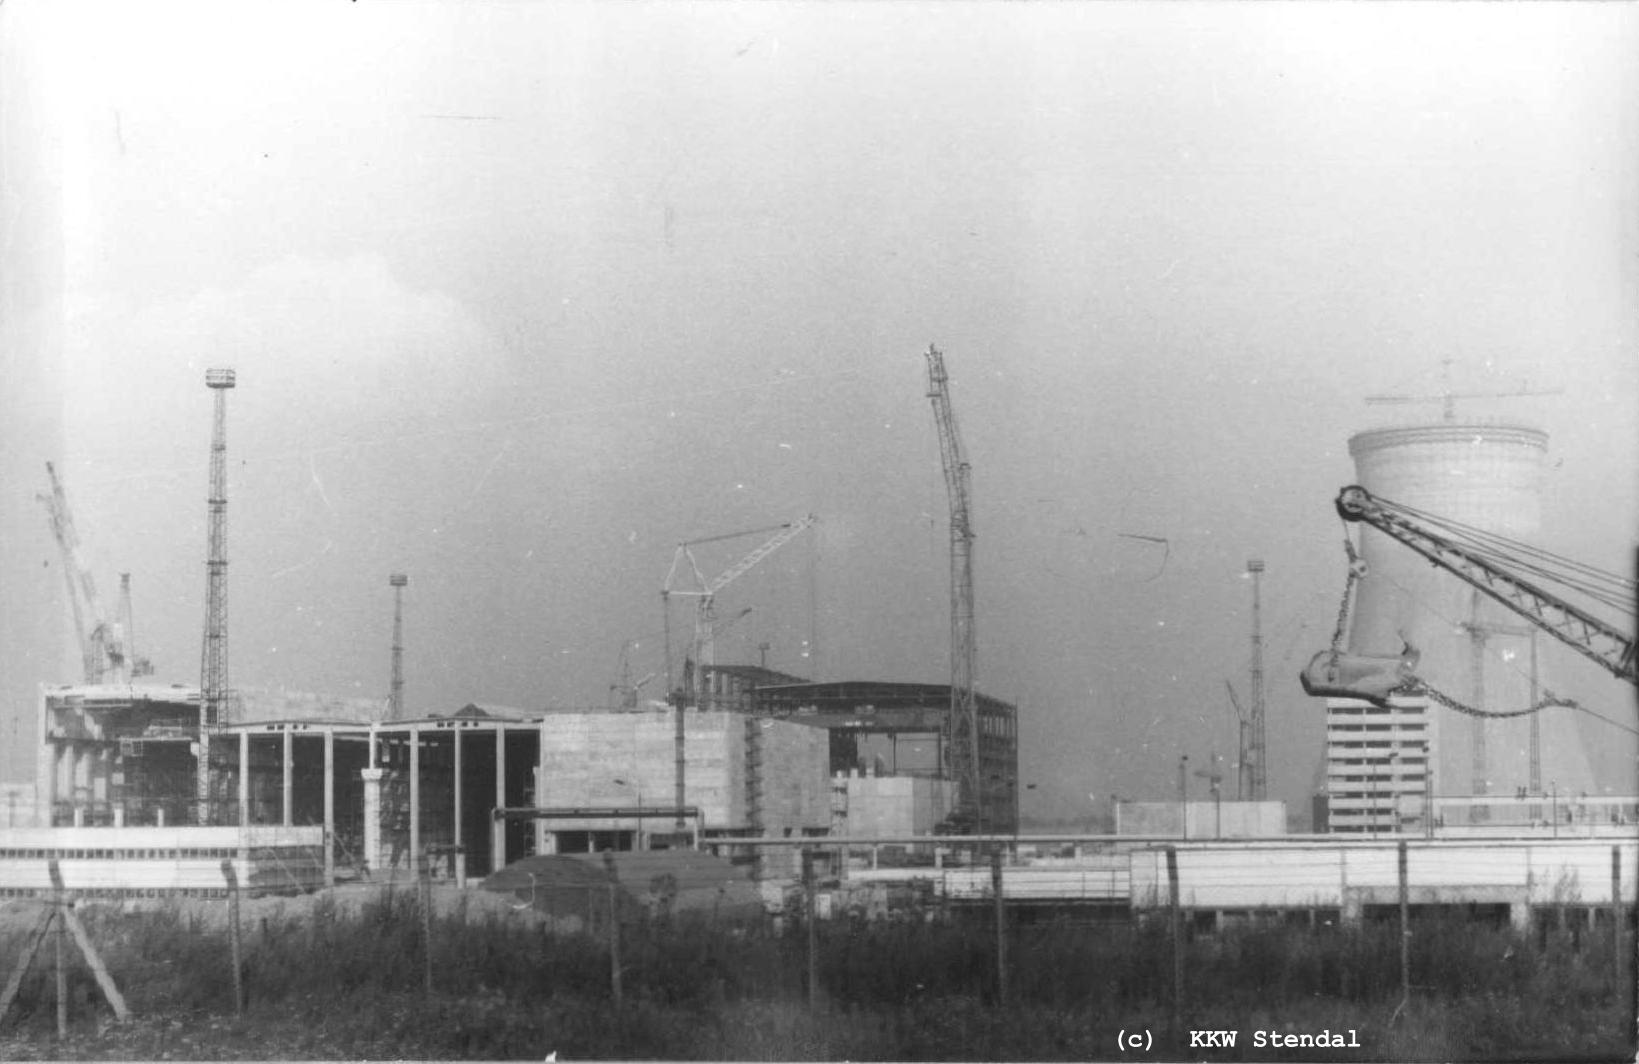  AKW Stendal, Baustelle 1988, Zentrale Aktive Werkstatt, Hauptanlagen 